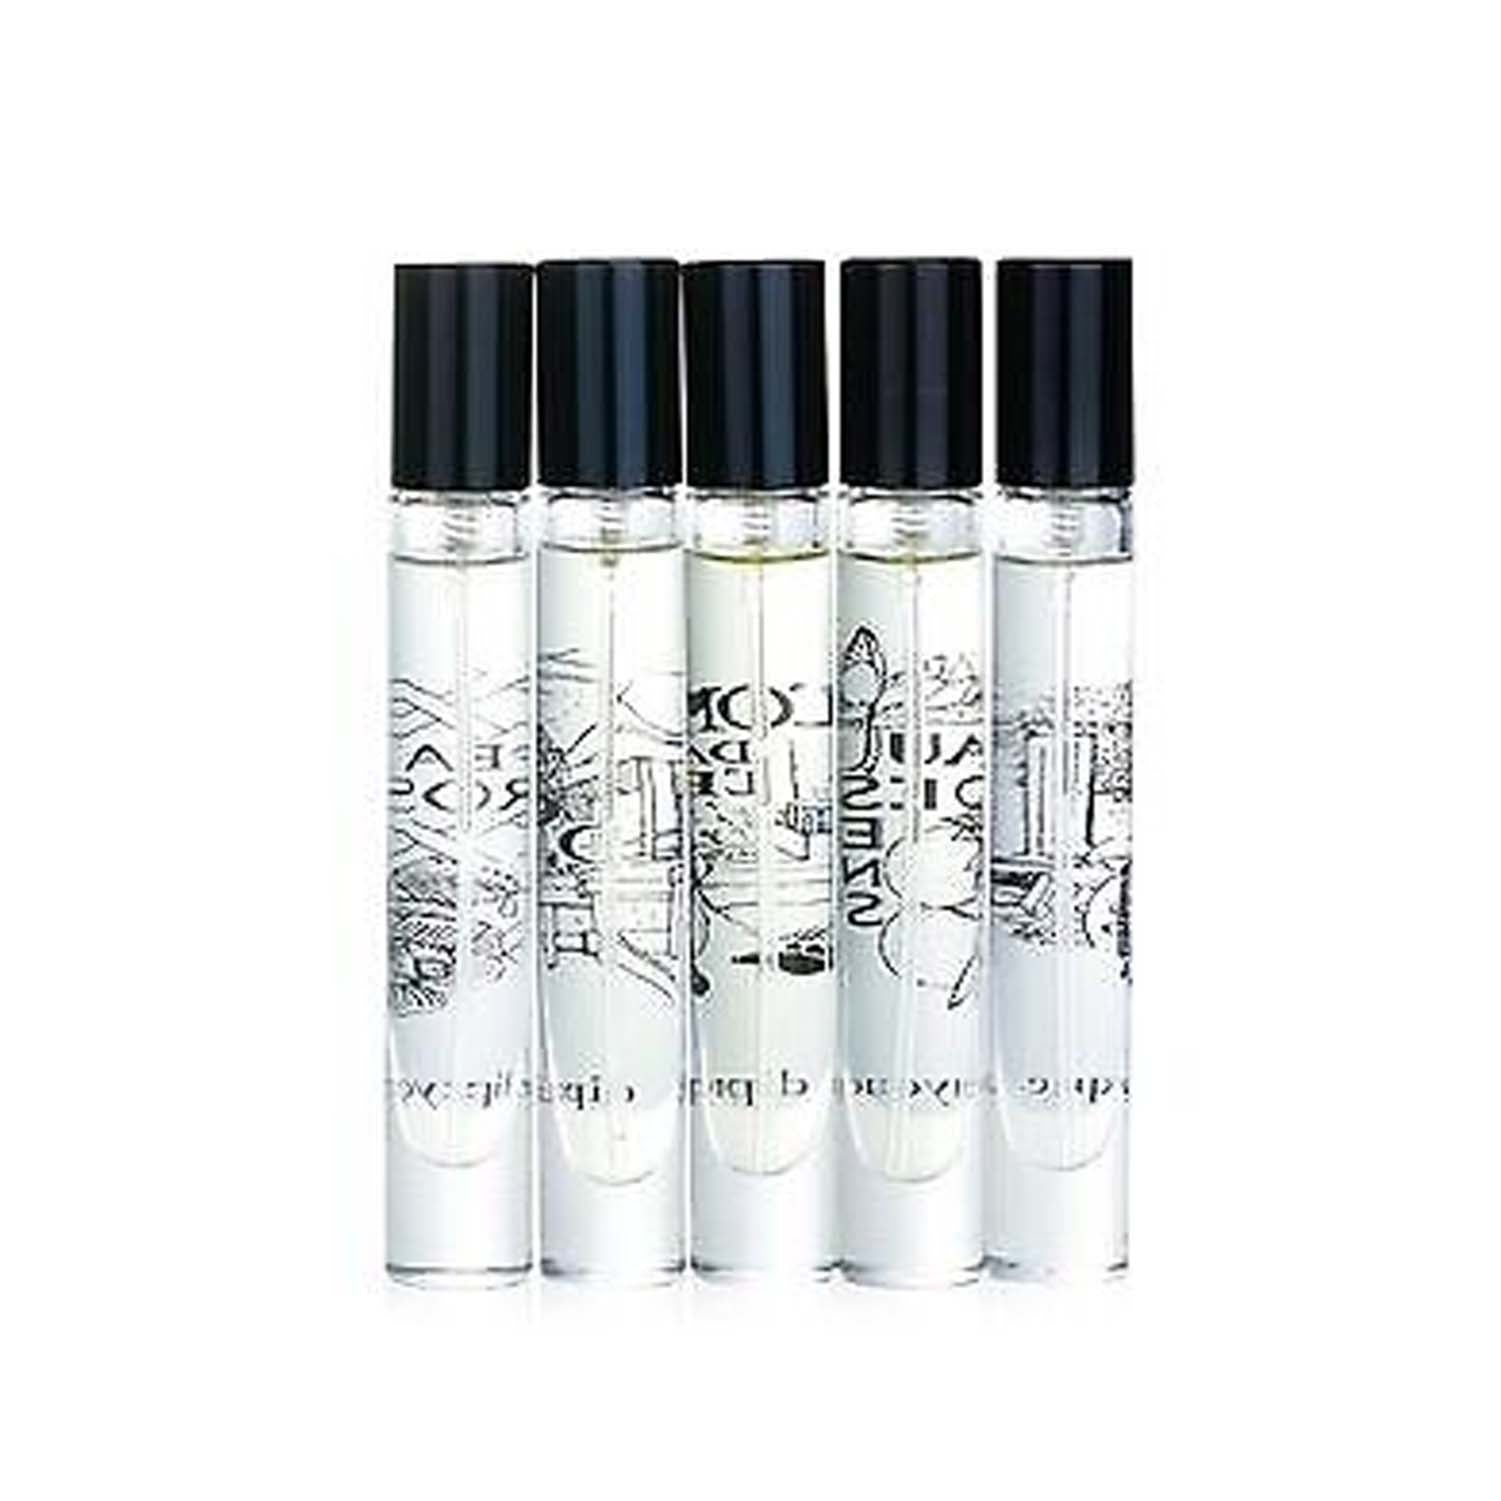 Diptyque L’Art Du Parfum Discovery Set Of 5